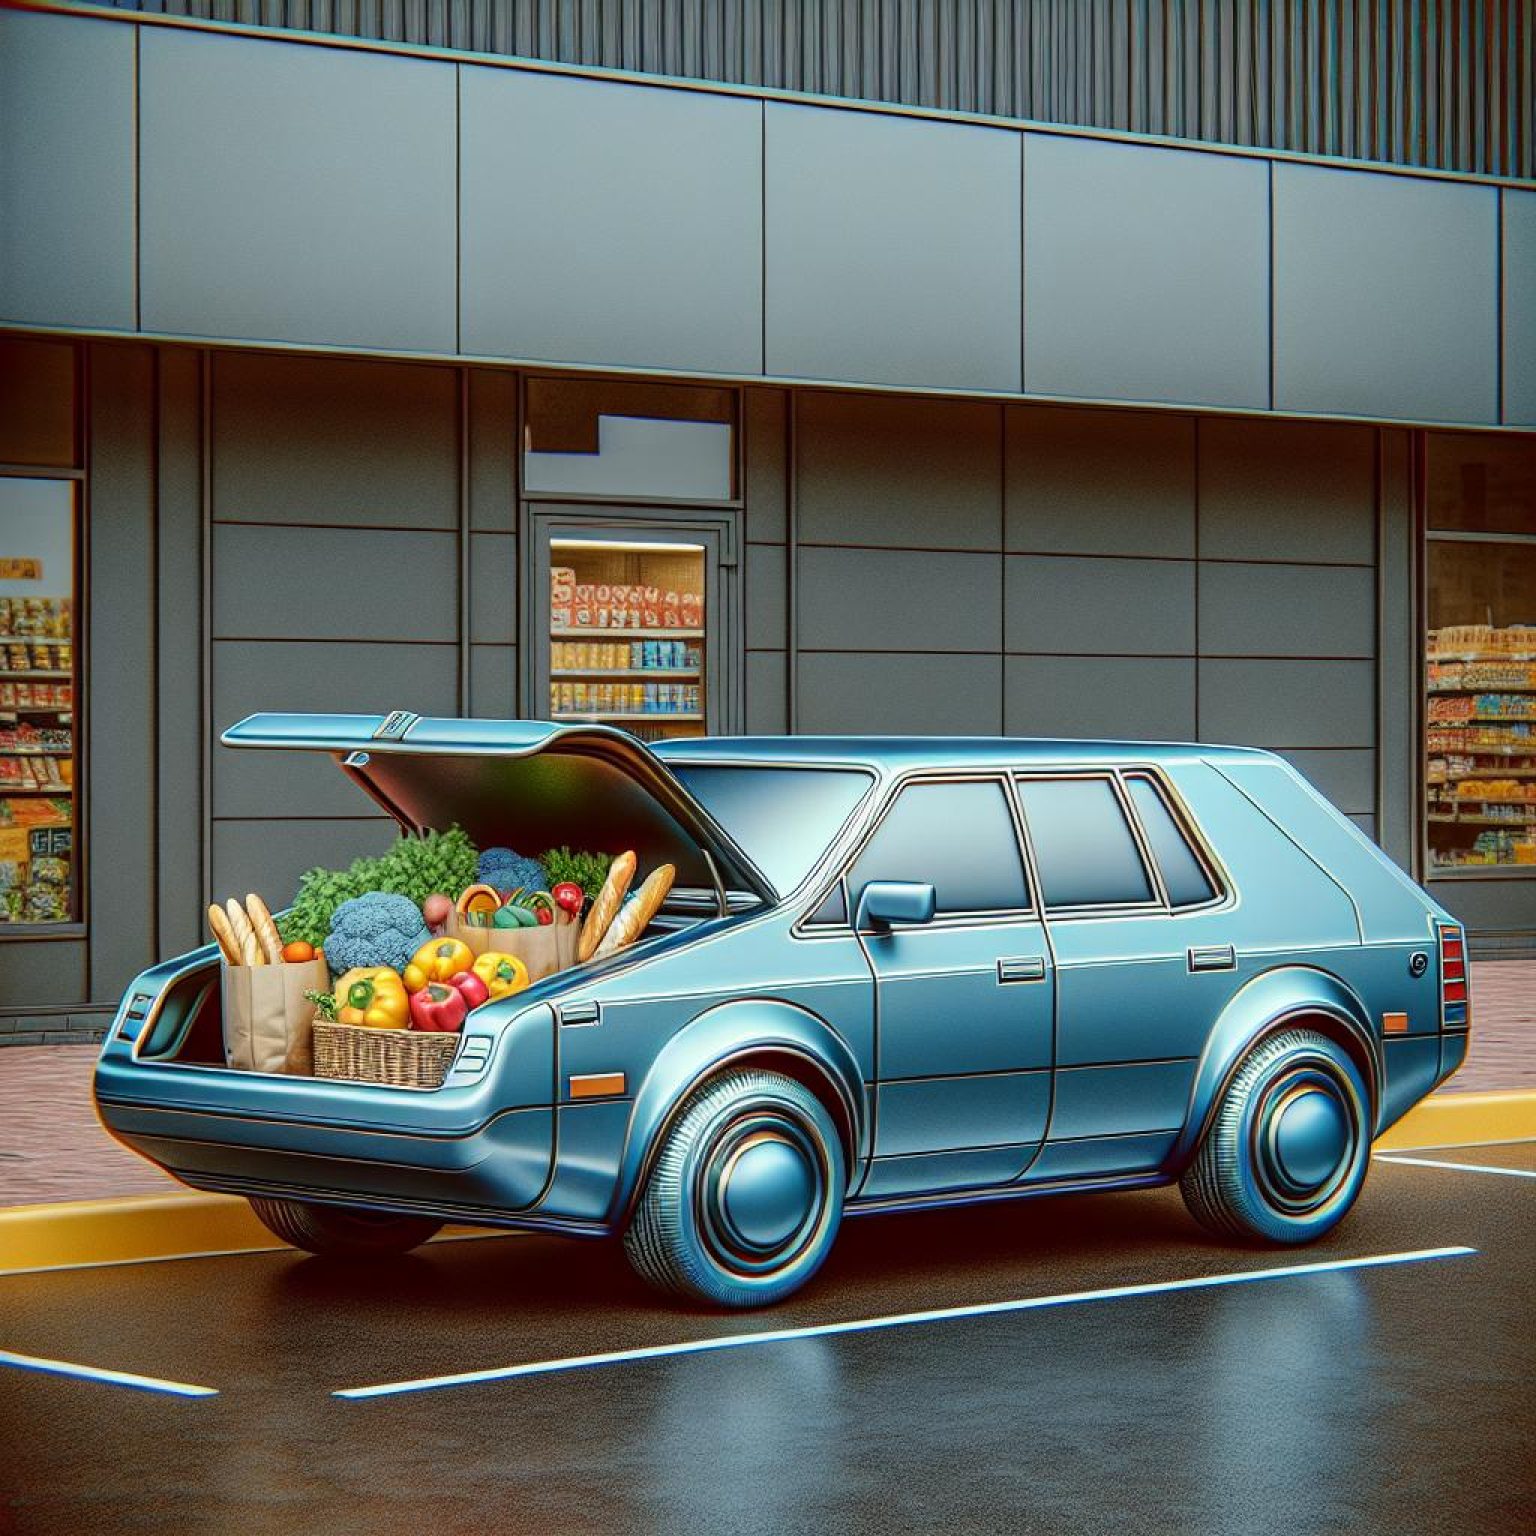 Stylized Subaru with groceries.